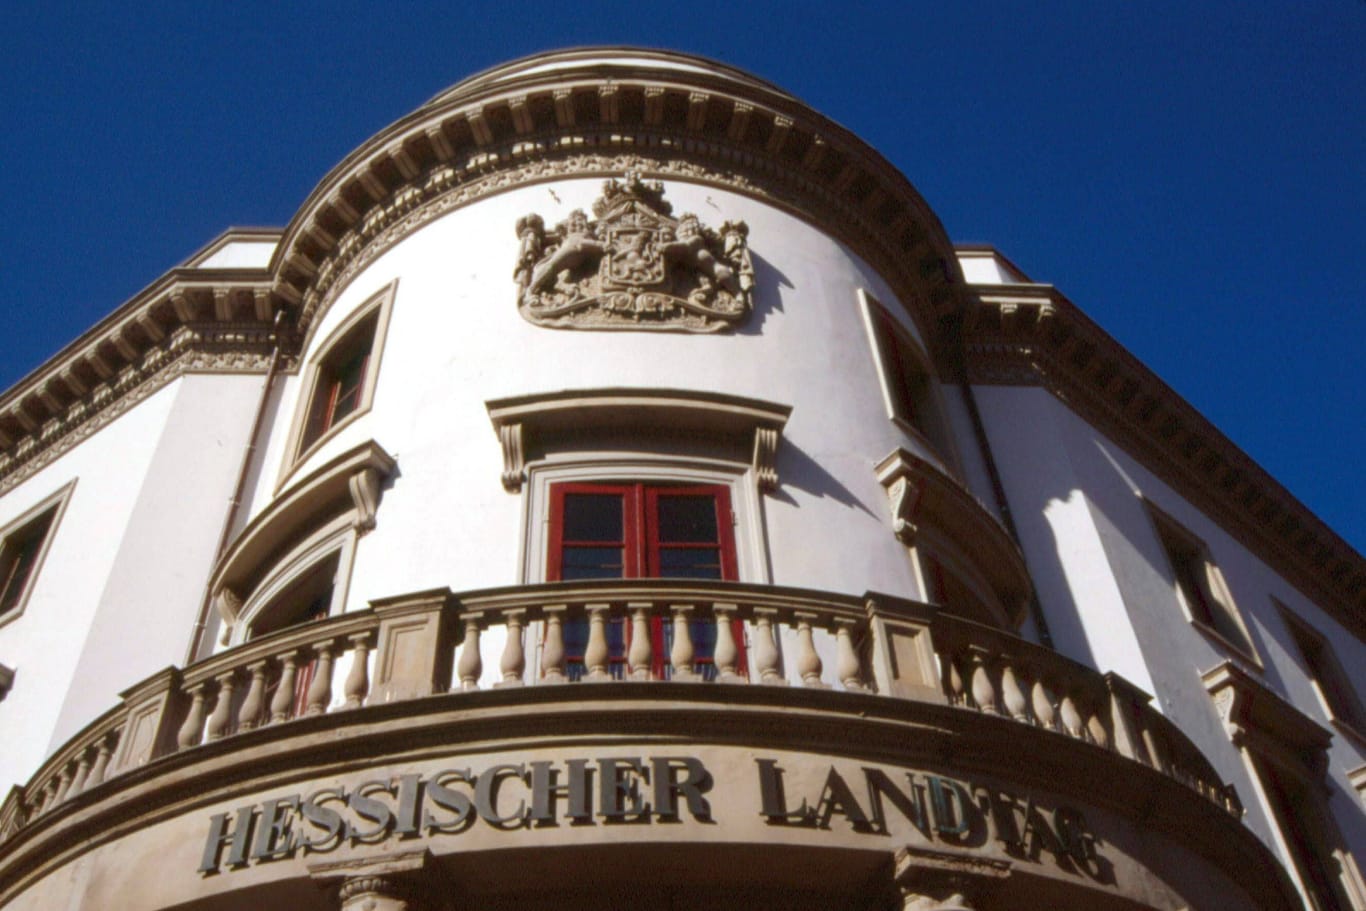 Hessischer Landtag in Wiesbaden (Symbolbild): Nach der Wahl wird entschieden, wer regiert.